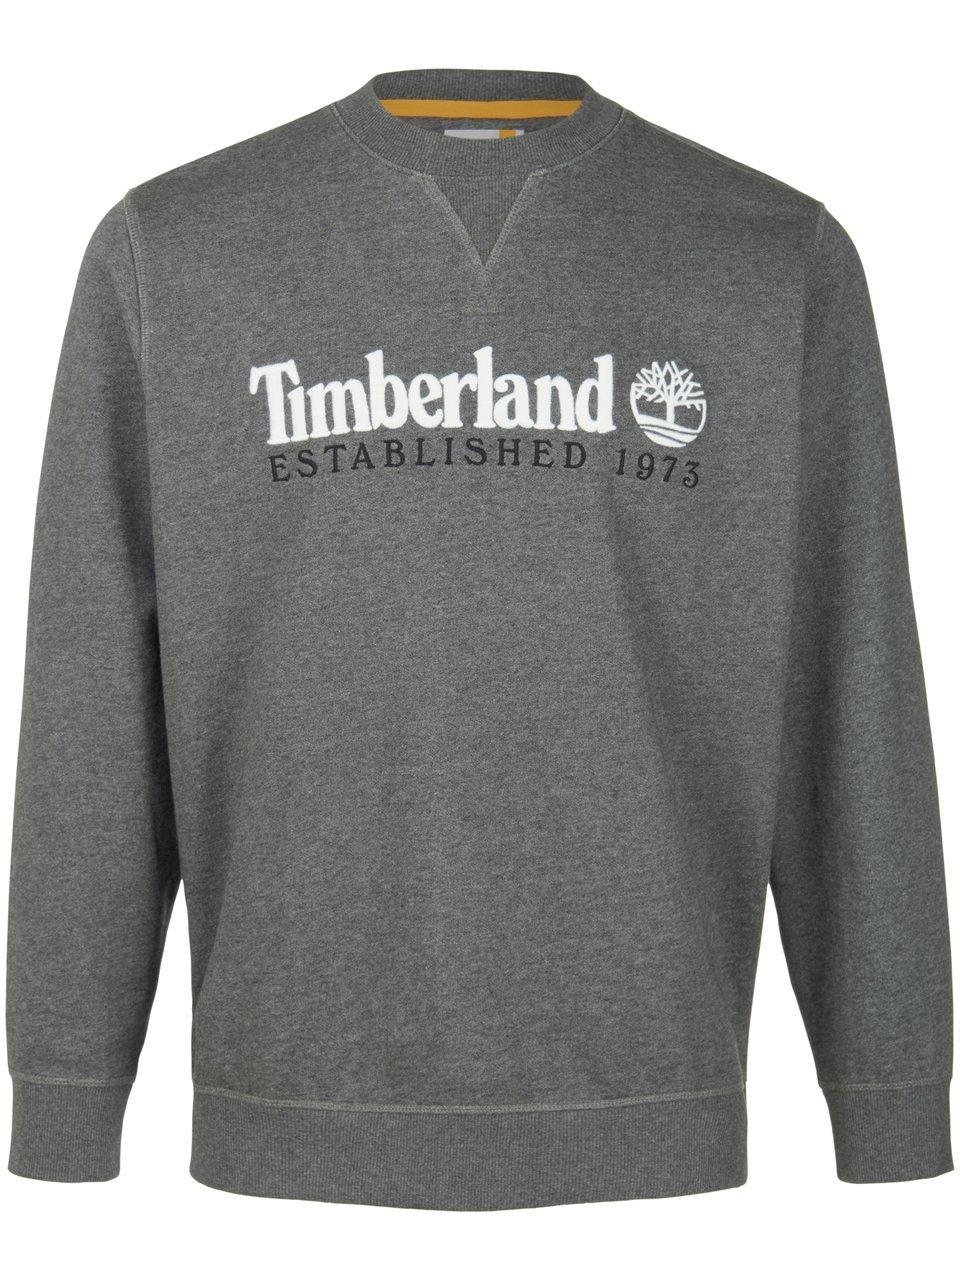 Sweatshirt Van Timberland grijs